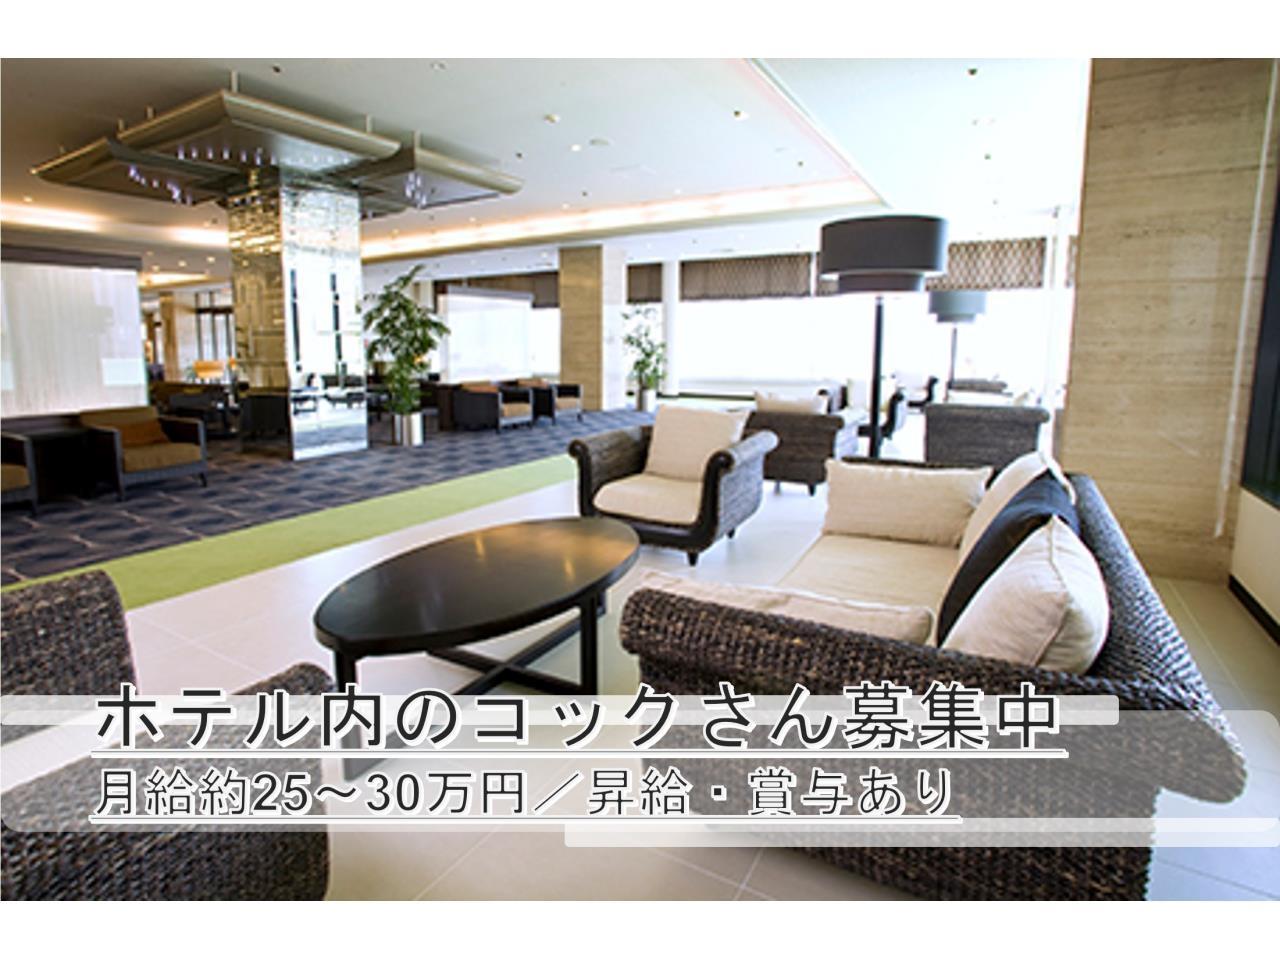 津山を代表する『津山鶴山ホテル』での和食または洋食の調理スタッフ